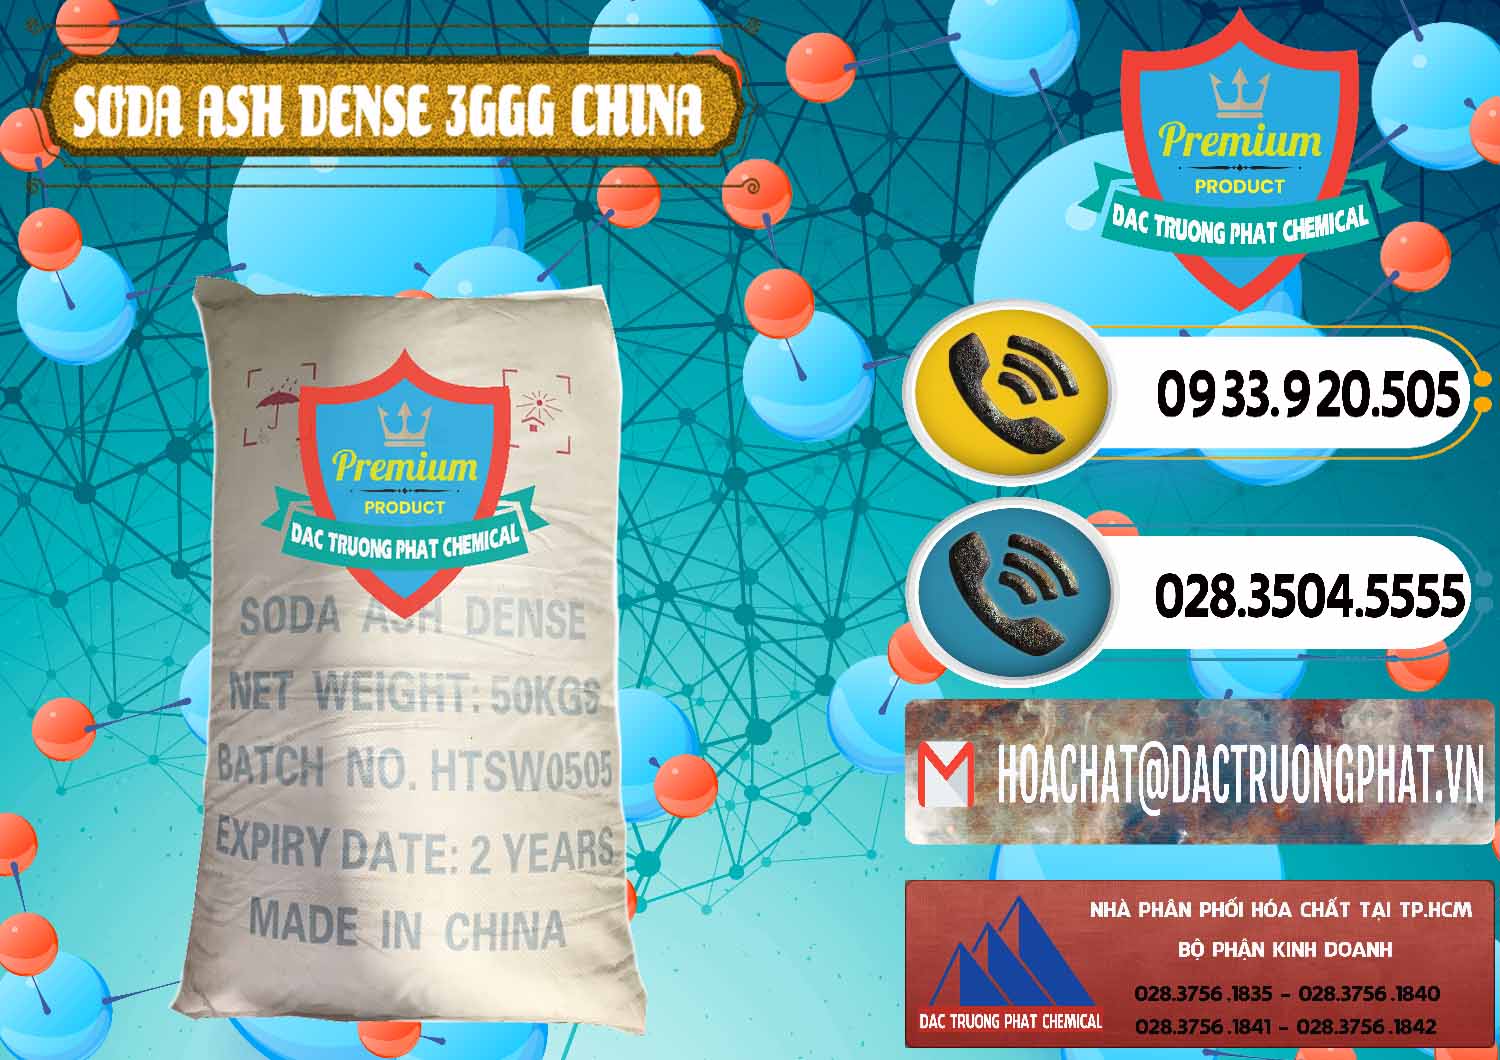 Công ty chuyên cung cấp _ bán Soda Ash Dense - NA2CO3 3GGG Trung Quốc China - 0335 - Nơi chuyên bán _ phân phối hóa chất tại TP.HCM - hoachatdetnhuom.vn